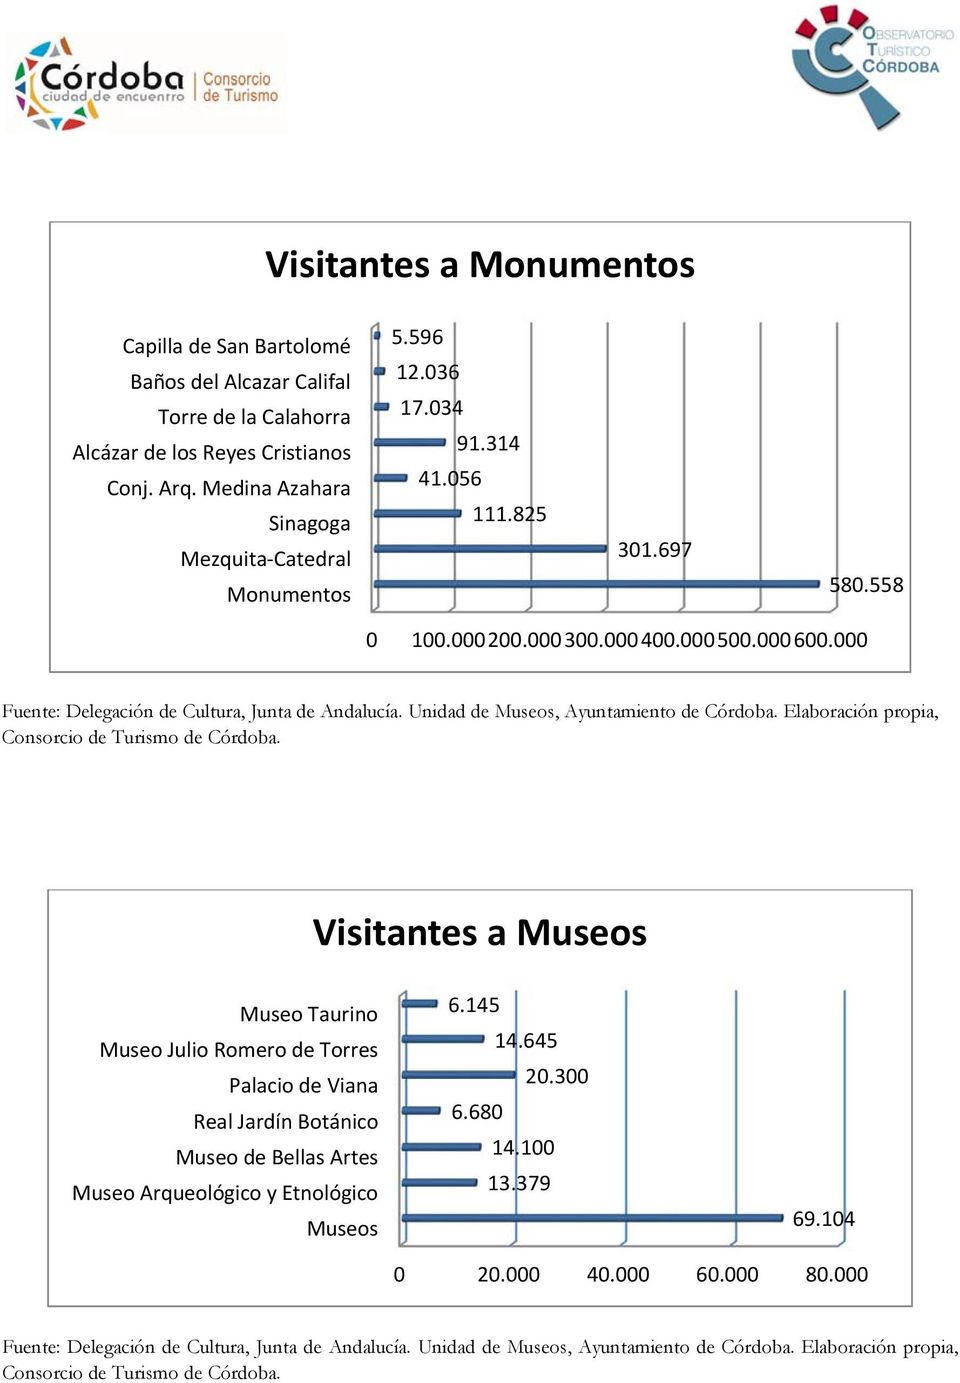 Elaboración propia, Consorcio de Turismo de Córdoba.